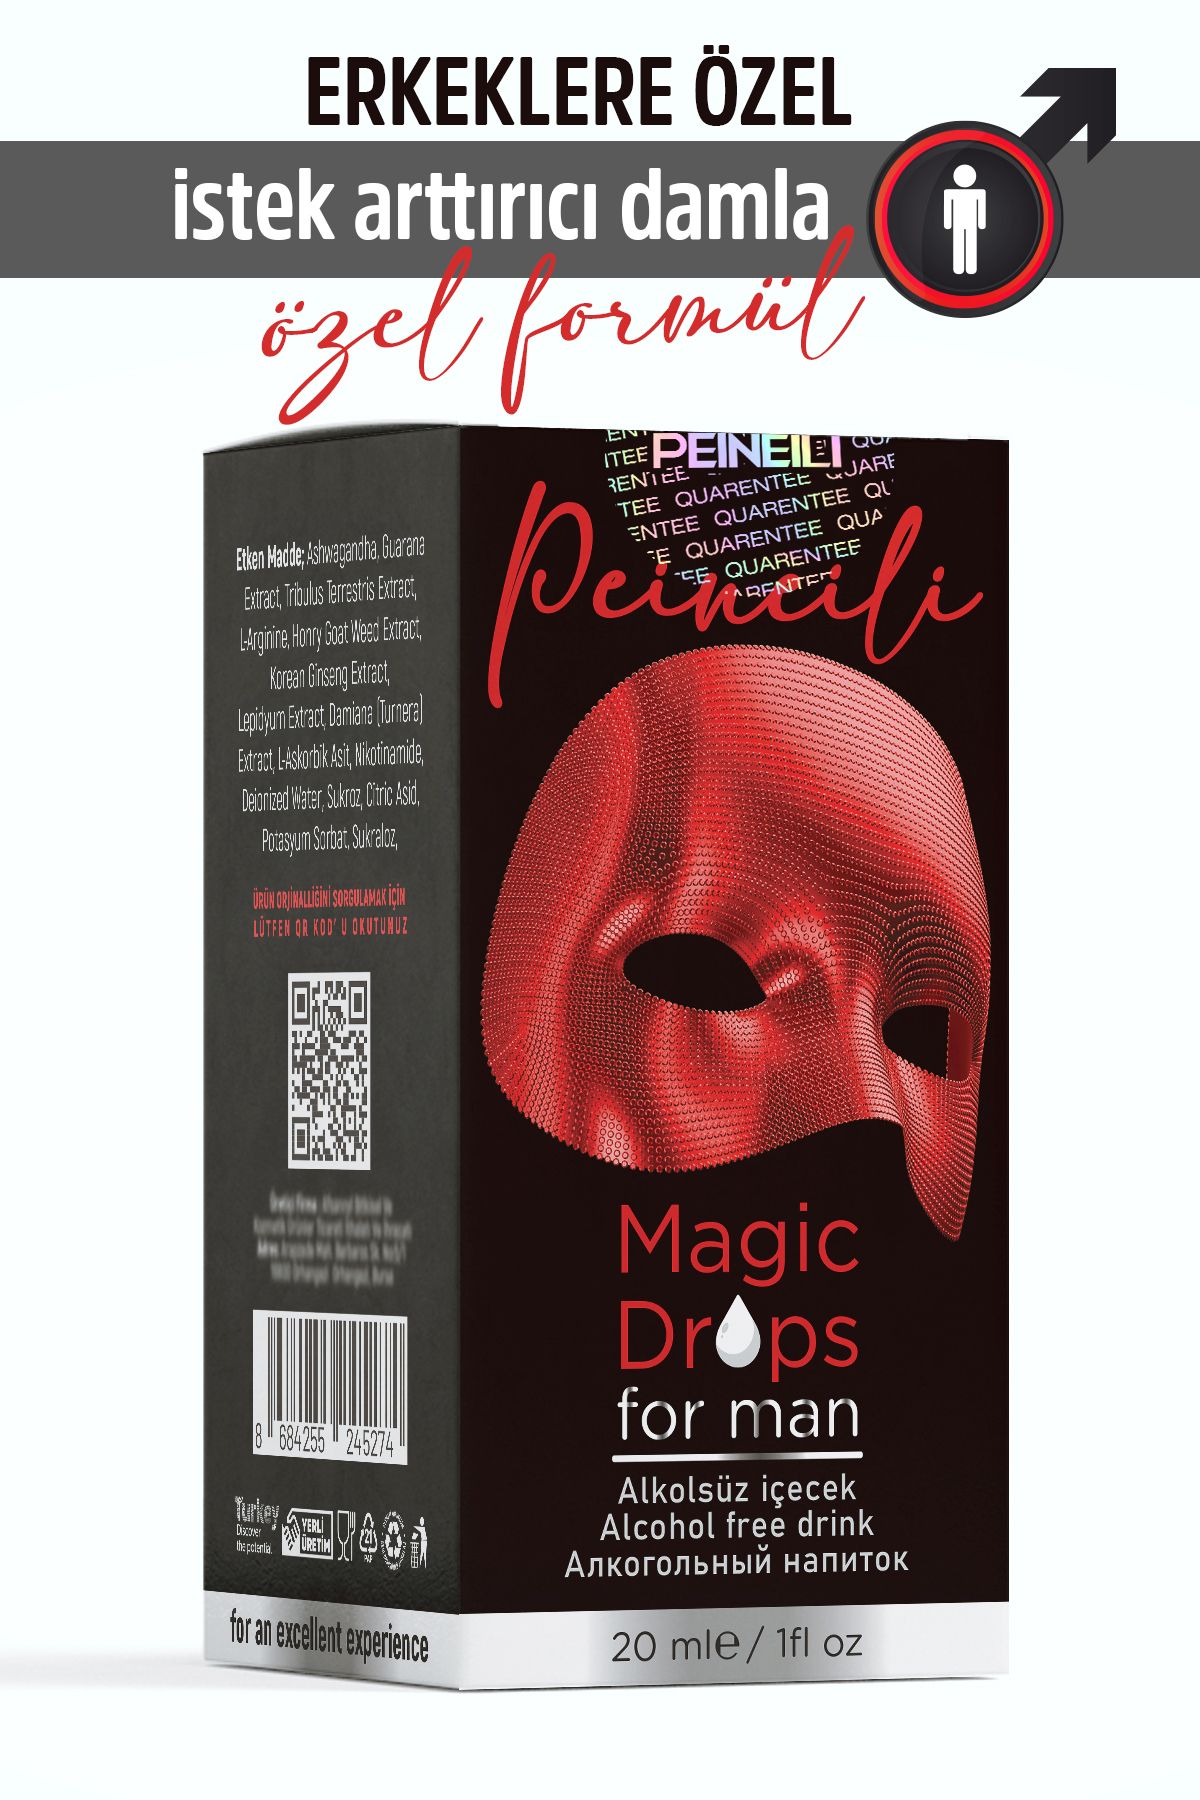 PEINEILI Magic Drops Formen Erkeklere Özel Libido Yükseltici Damla 20ml